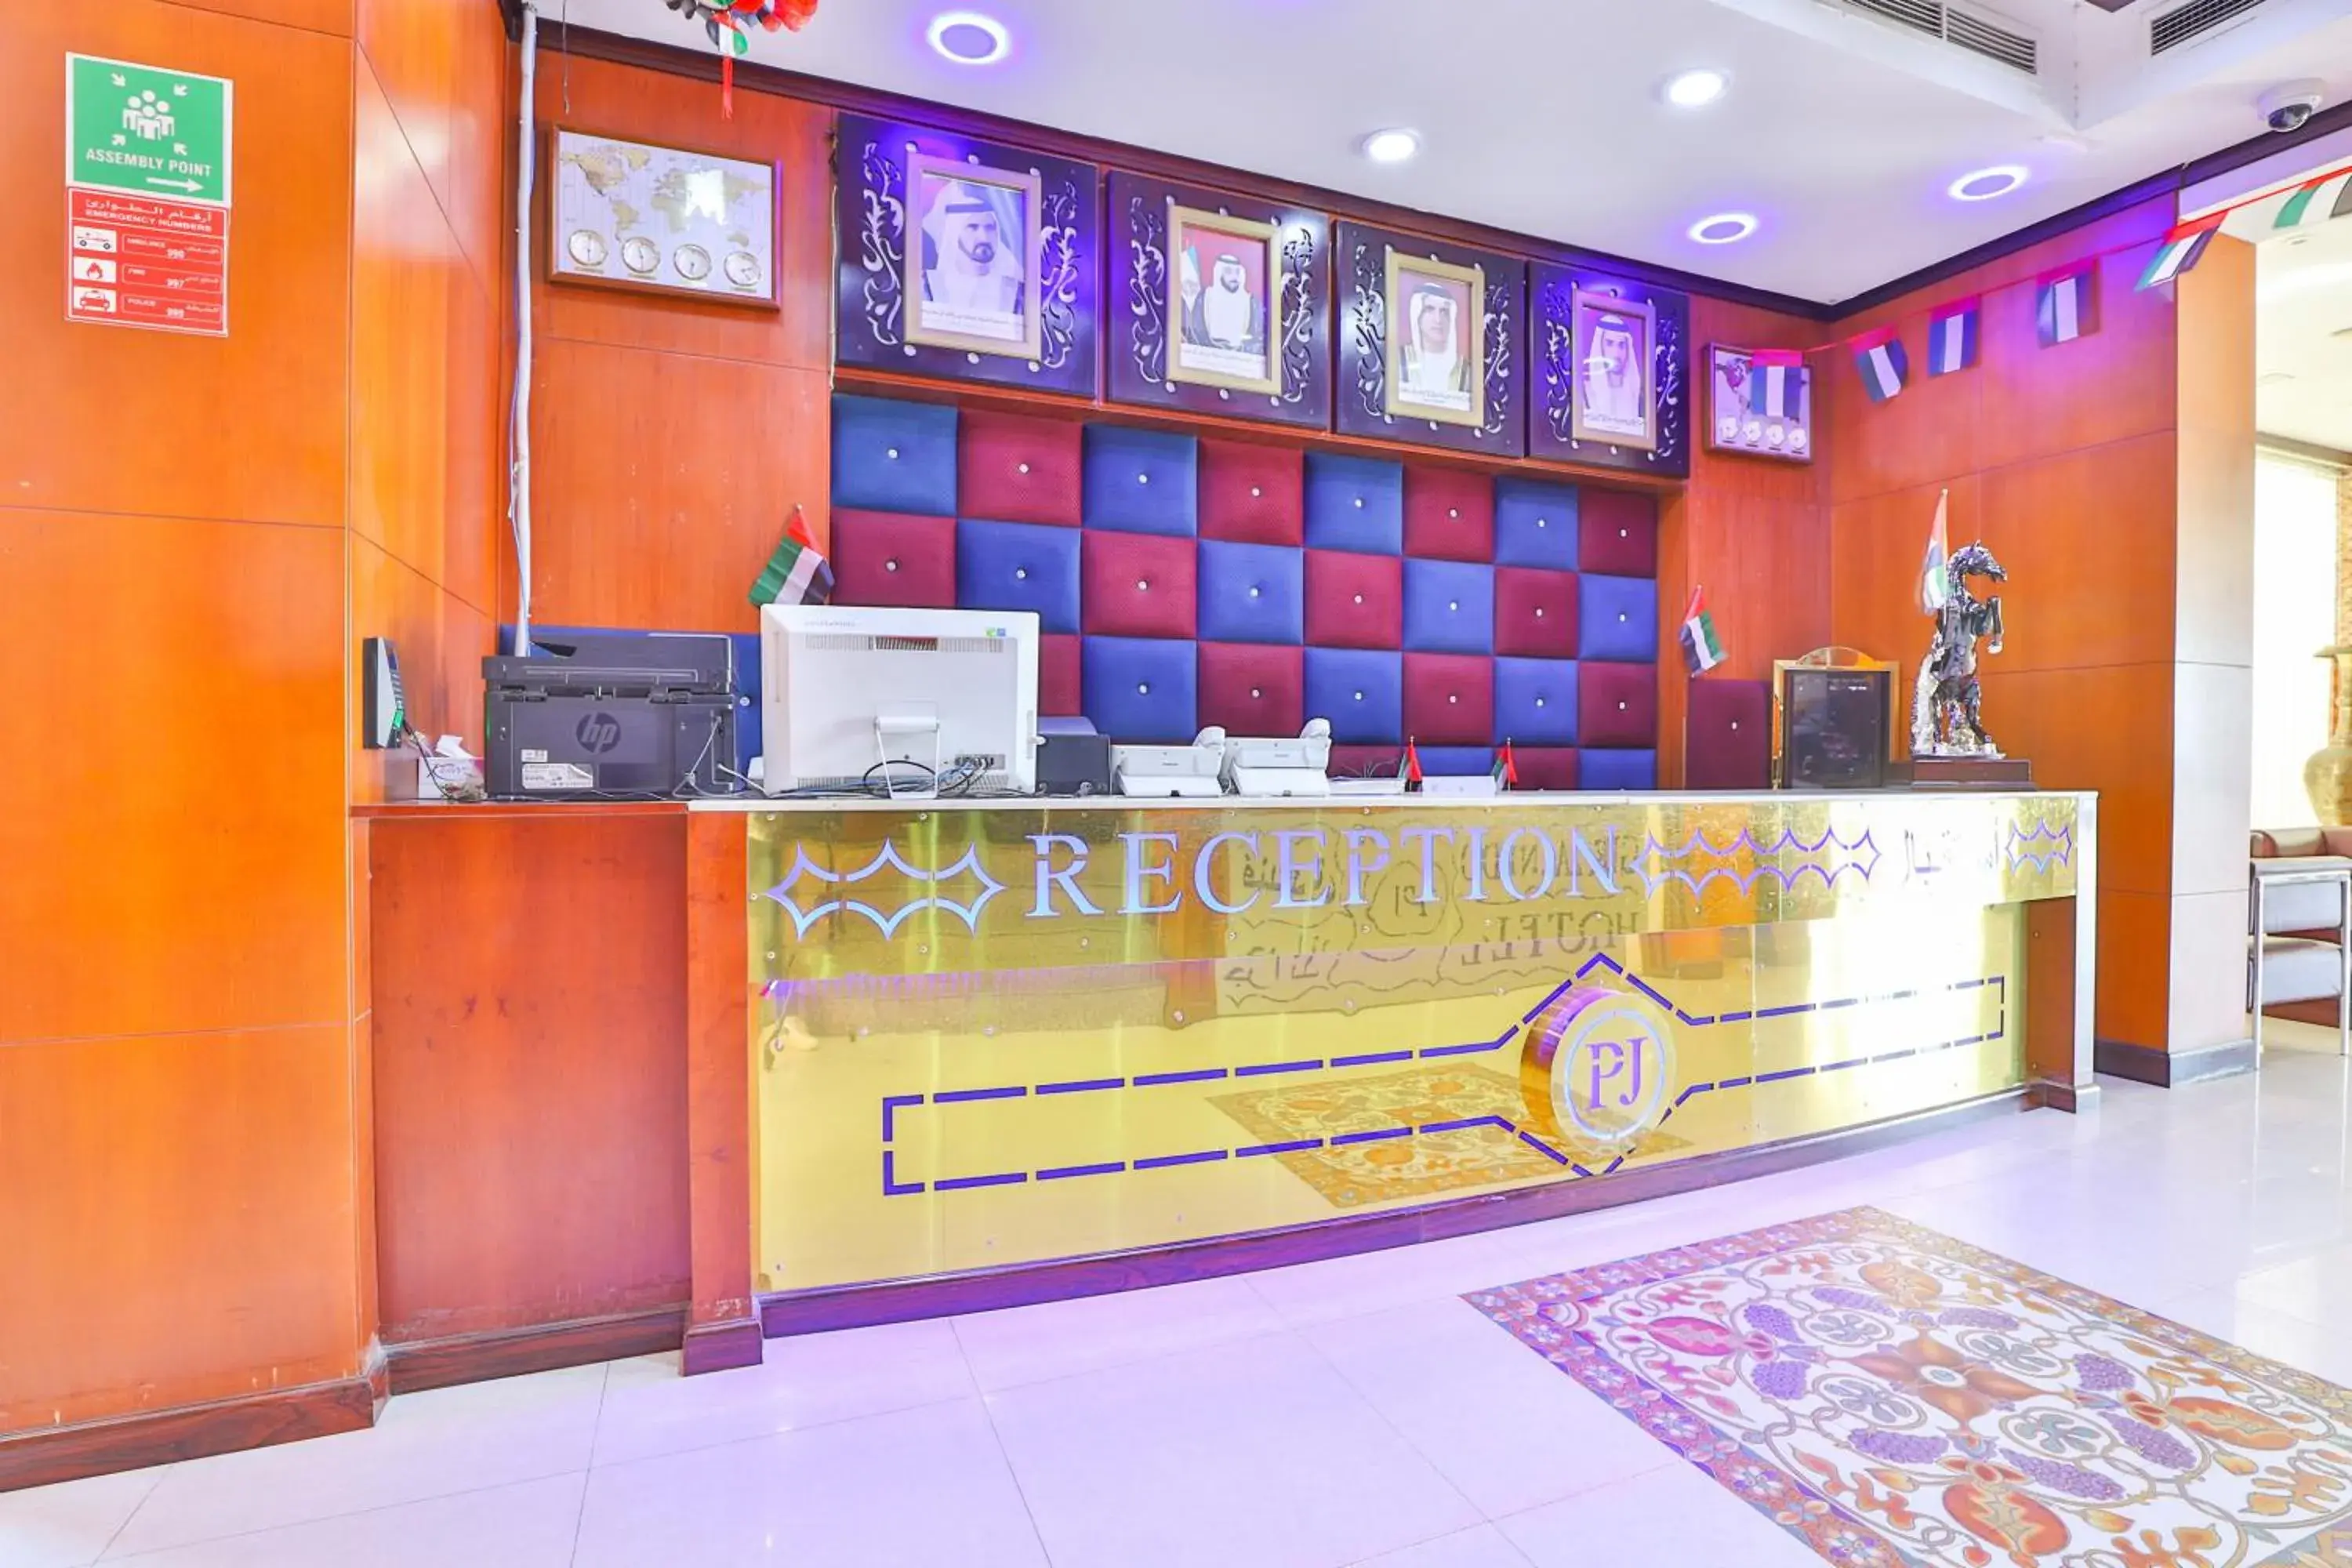 Lobby or reception, Lobby/Reception in Grand Pj Hotel